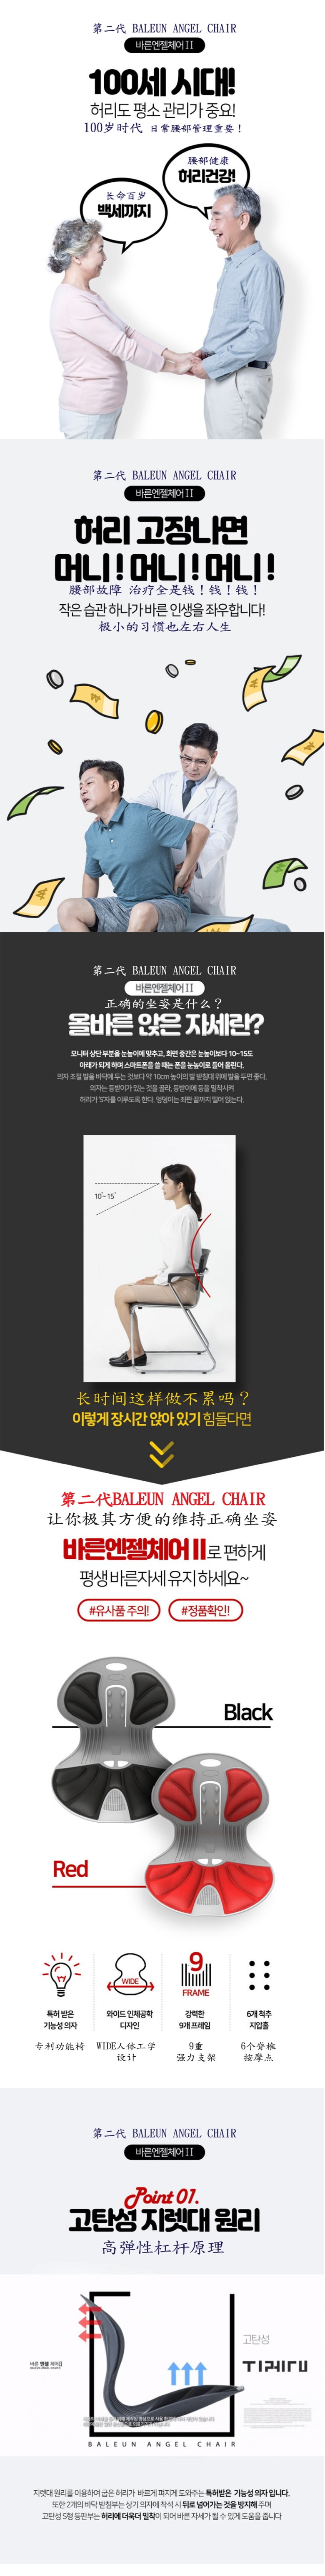 韩国 BALEUN ANGEL CHAIR WIDE(第二代)  人体工学办公室久坐不累护腰坐垫学生防驼背坐姿椅垫 红色  2 件